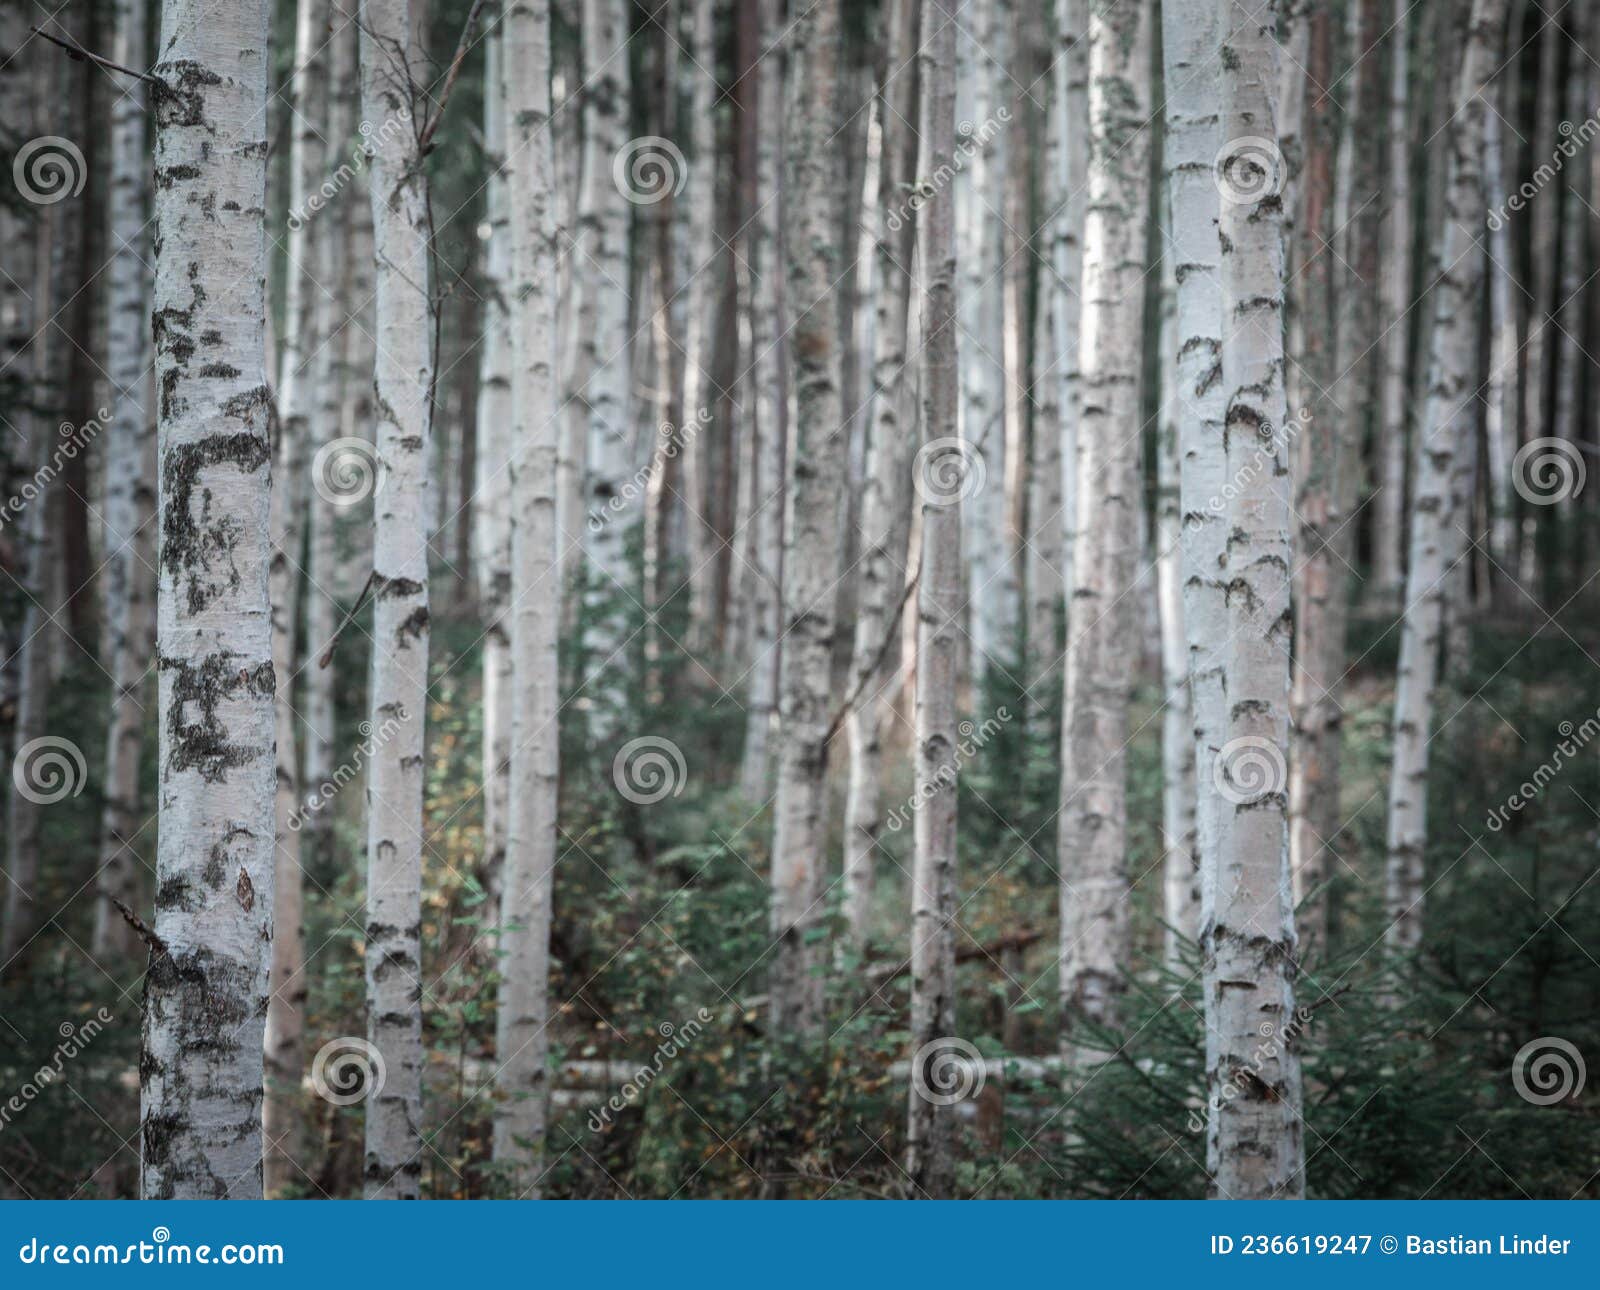 birch trees in the forest at lake siljan in dalarna, sweden